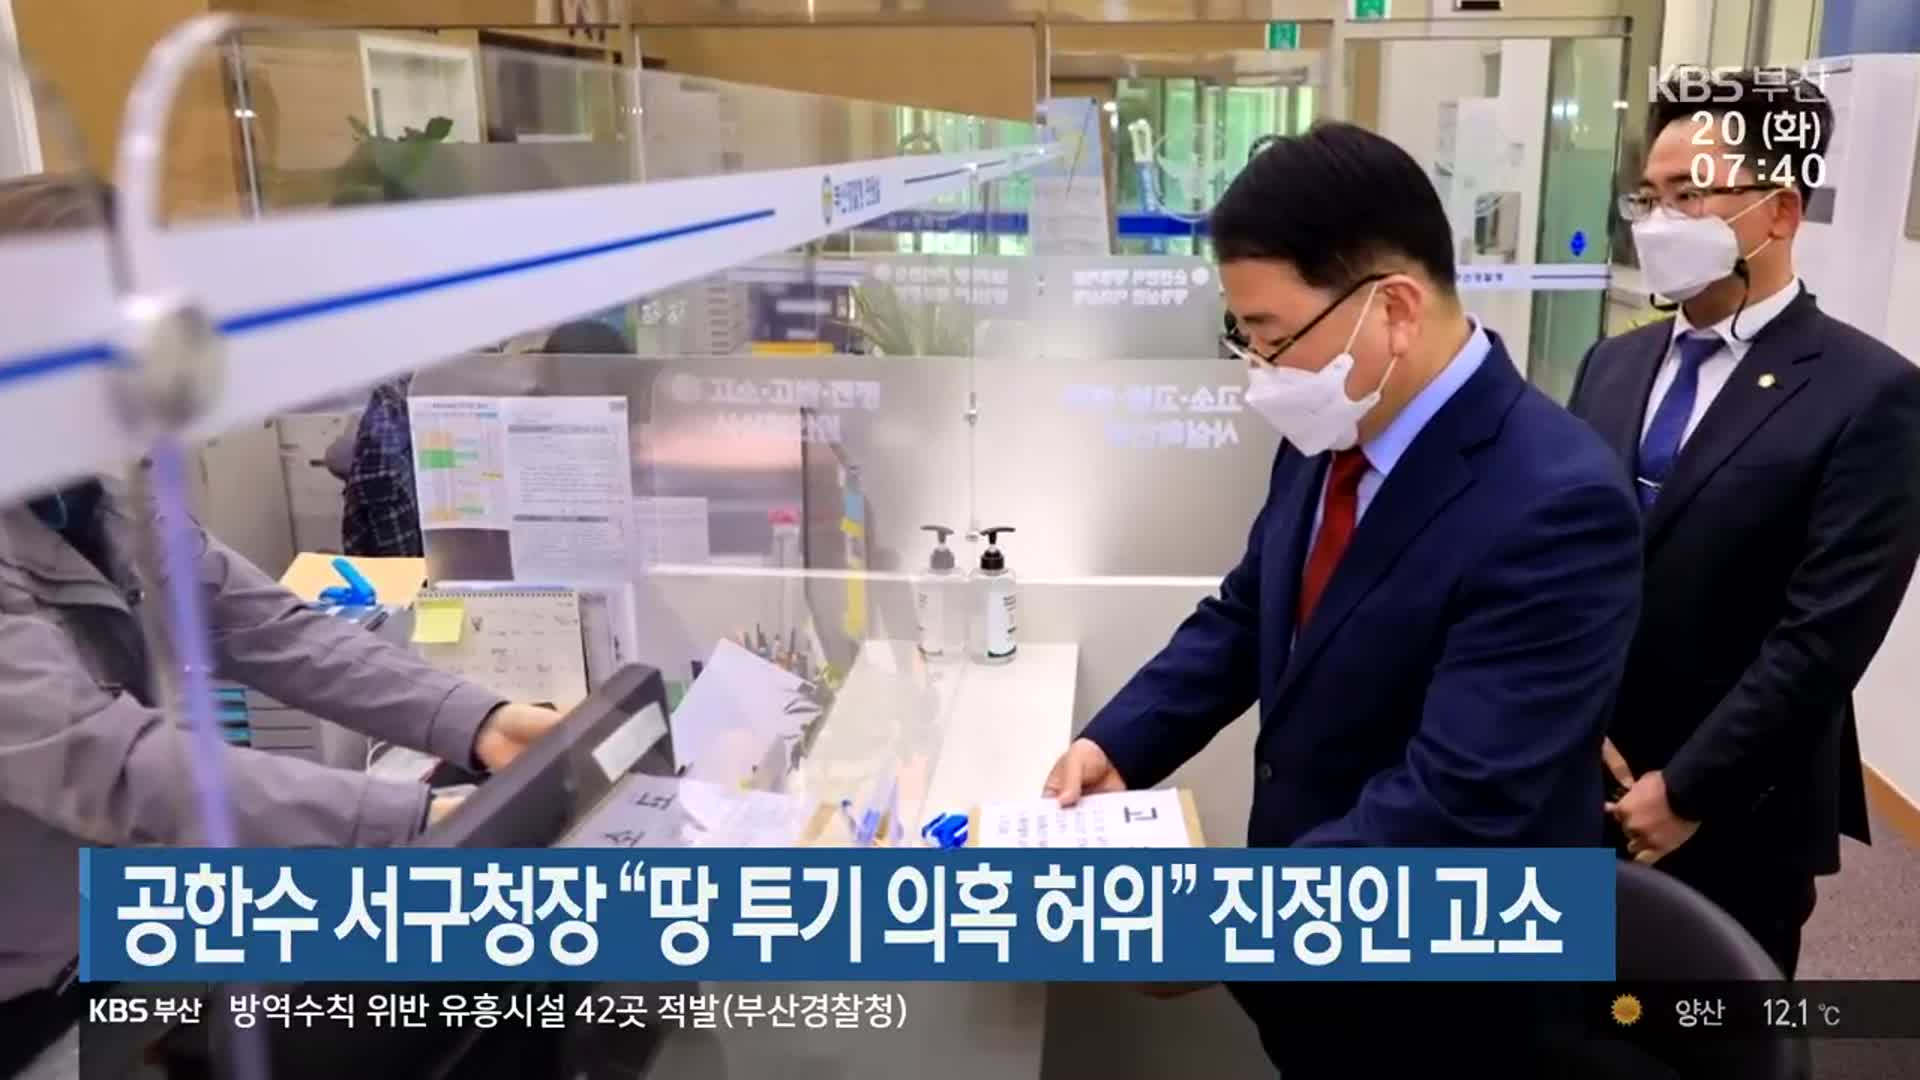 공한수 서구청장 “땅 투기 의혹 허위” 진정인 고소